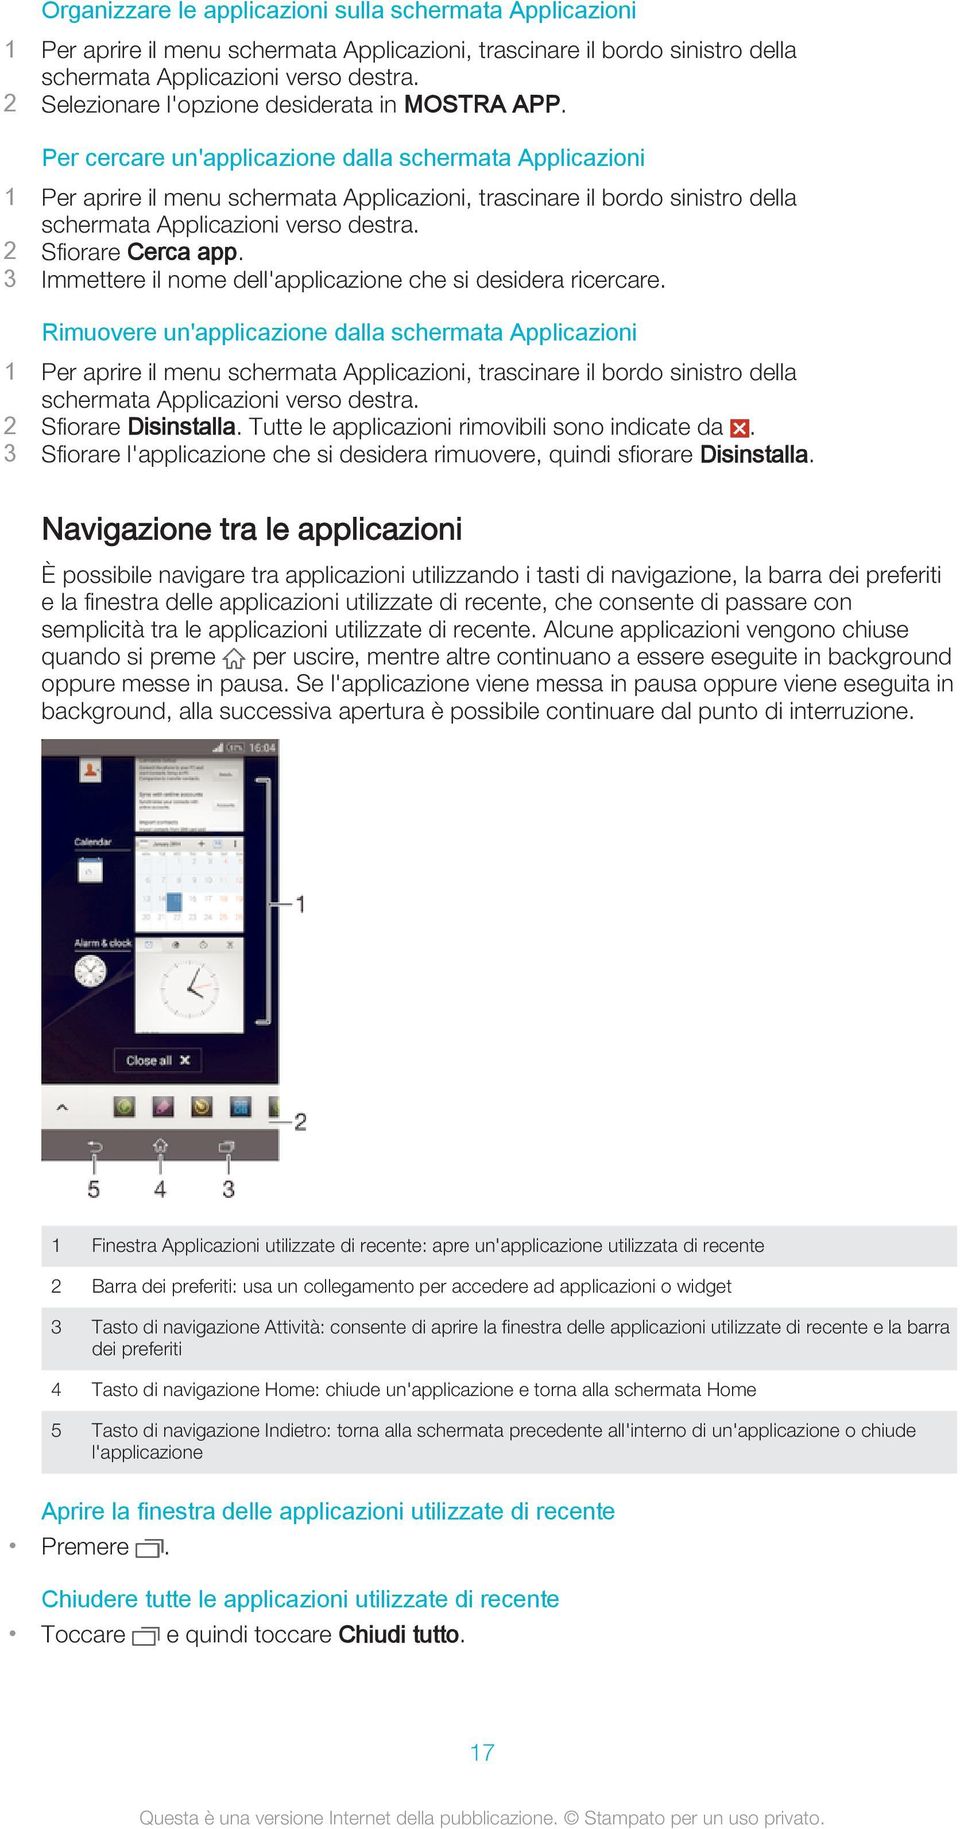 Per cercare un'applicazione dalla schermata Applicazioni 1 Per aprire il menu schermata Applicazioni, trascinare il bordo sinistro della schermata Applicazioni verso destra. 2 Sfiorare Cerca app.